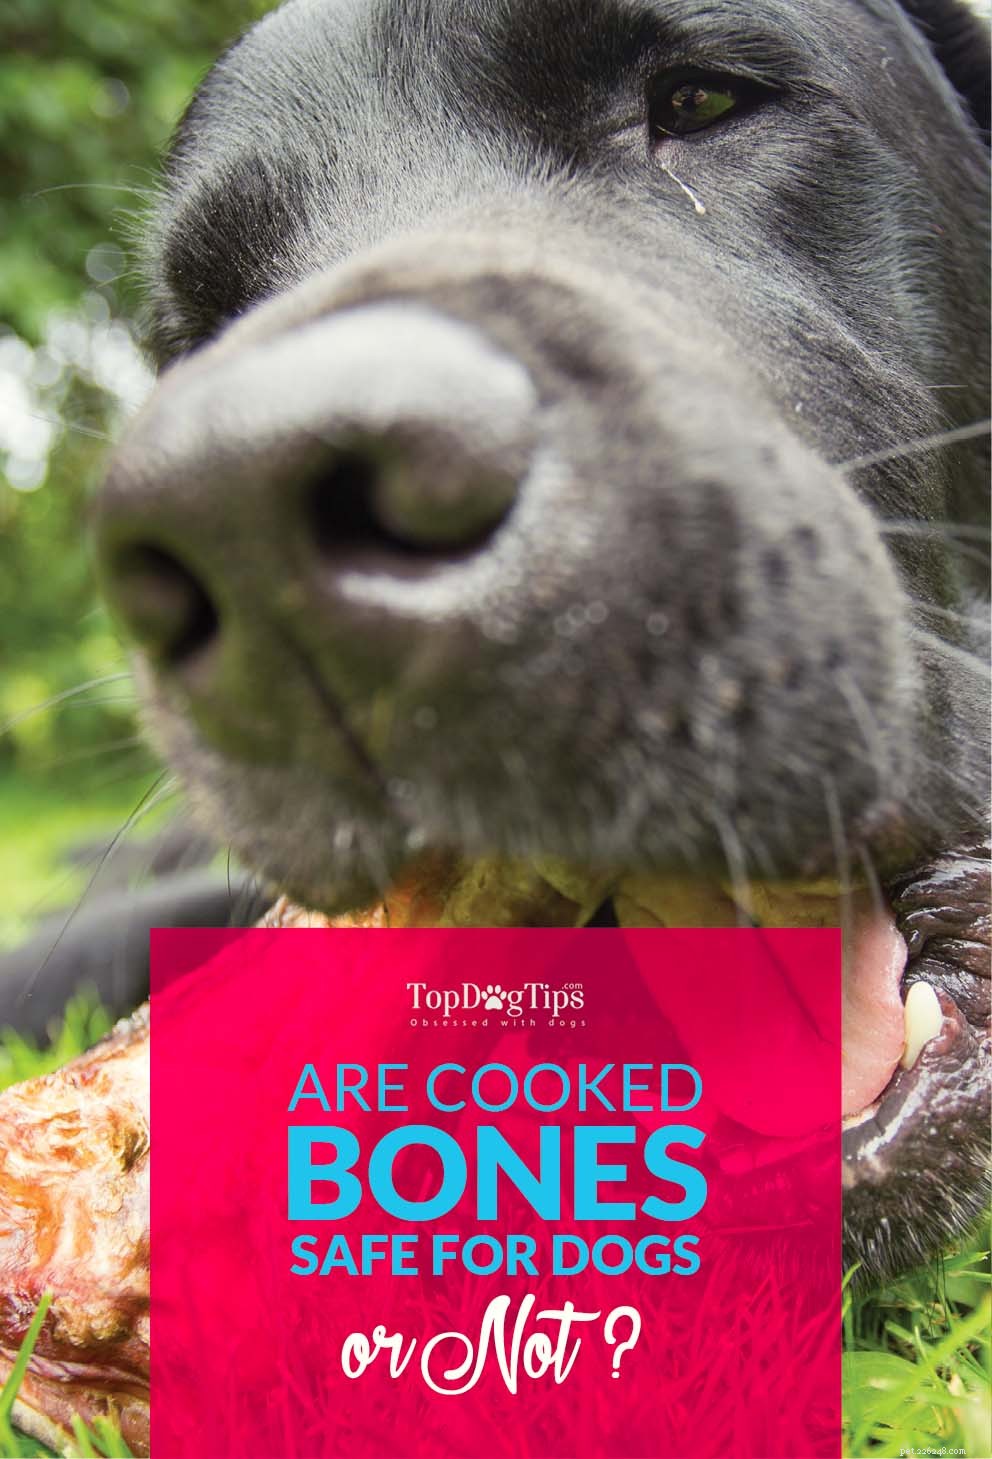 犬のための調理された骨は良い考えではないかもしれません 